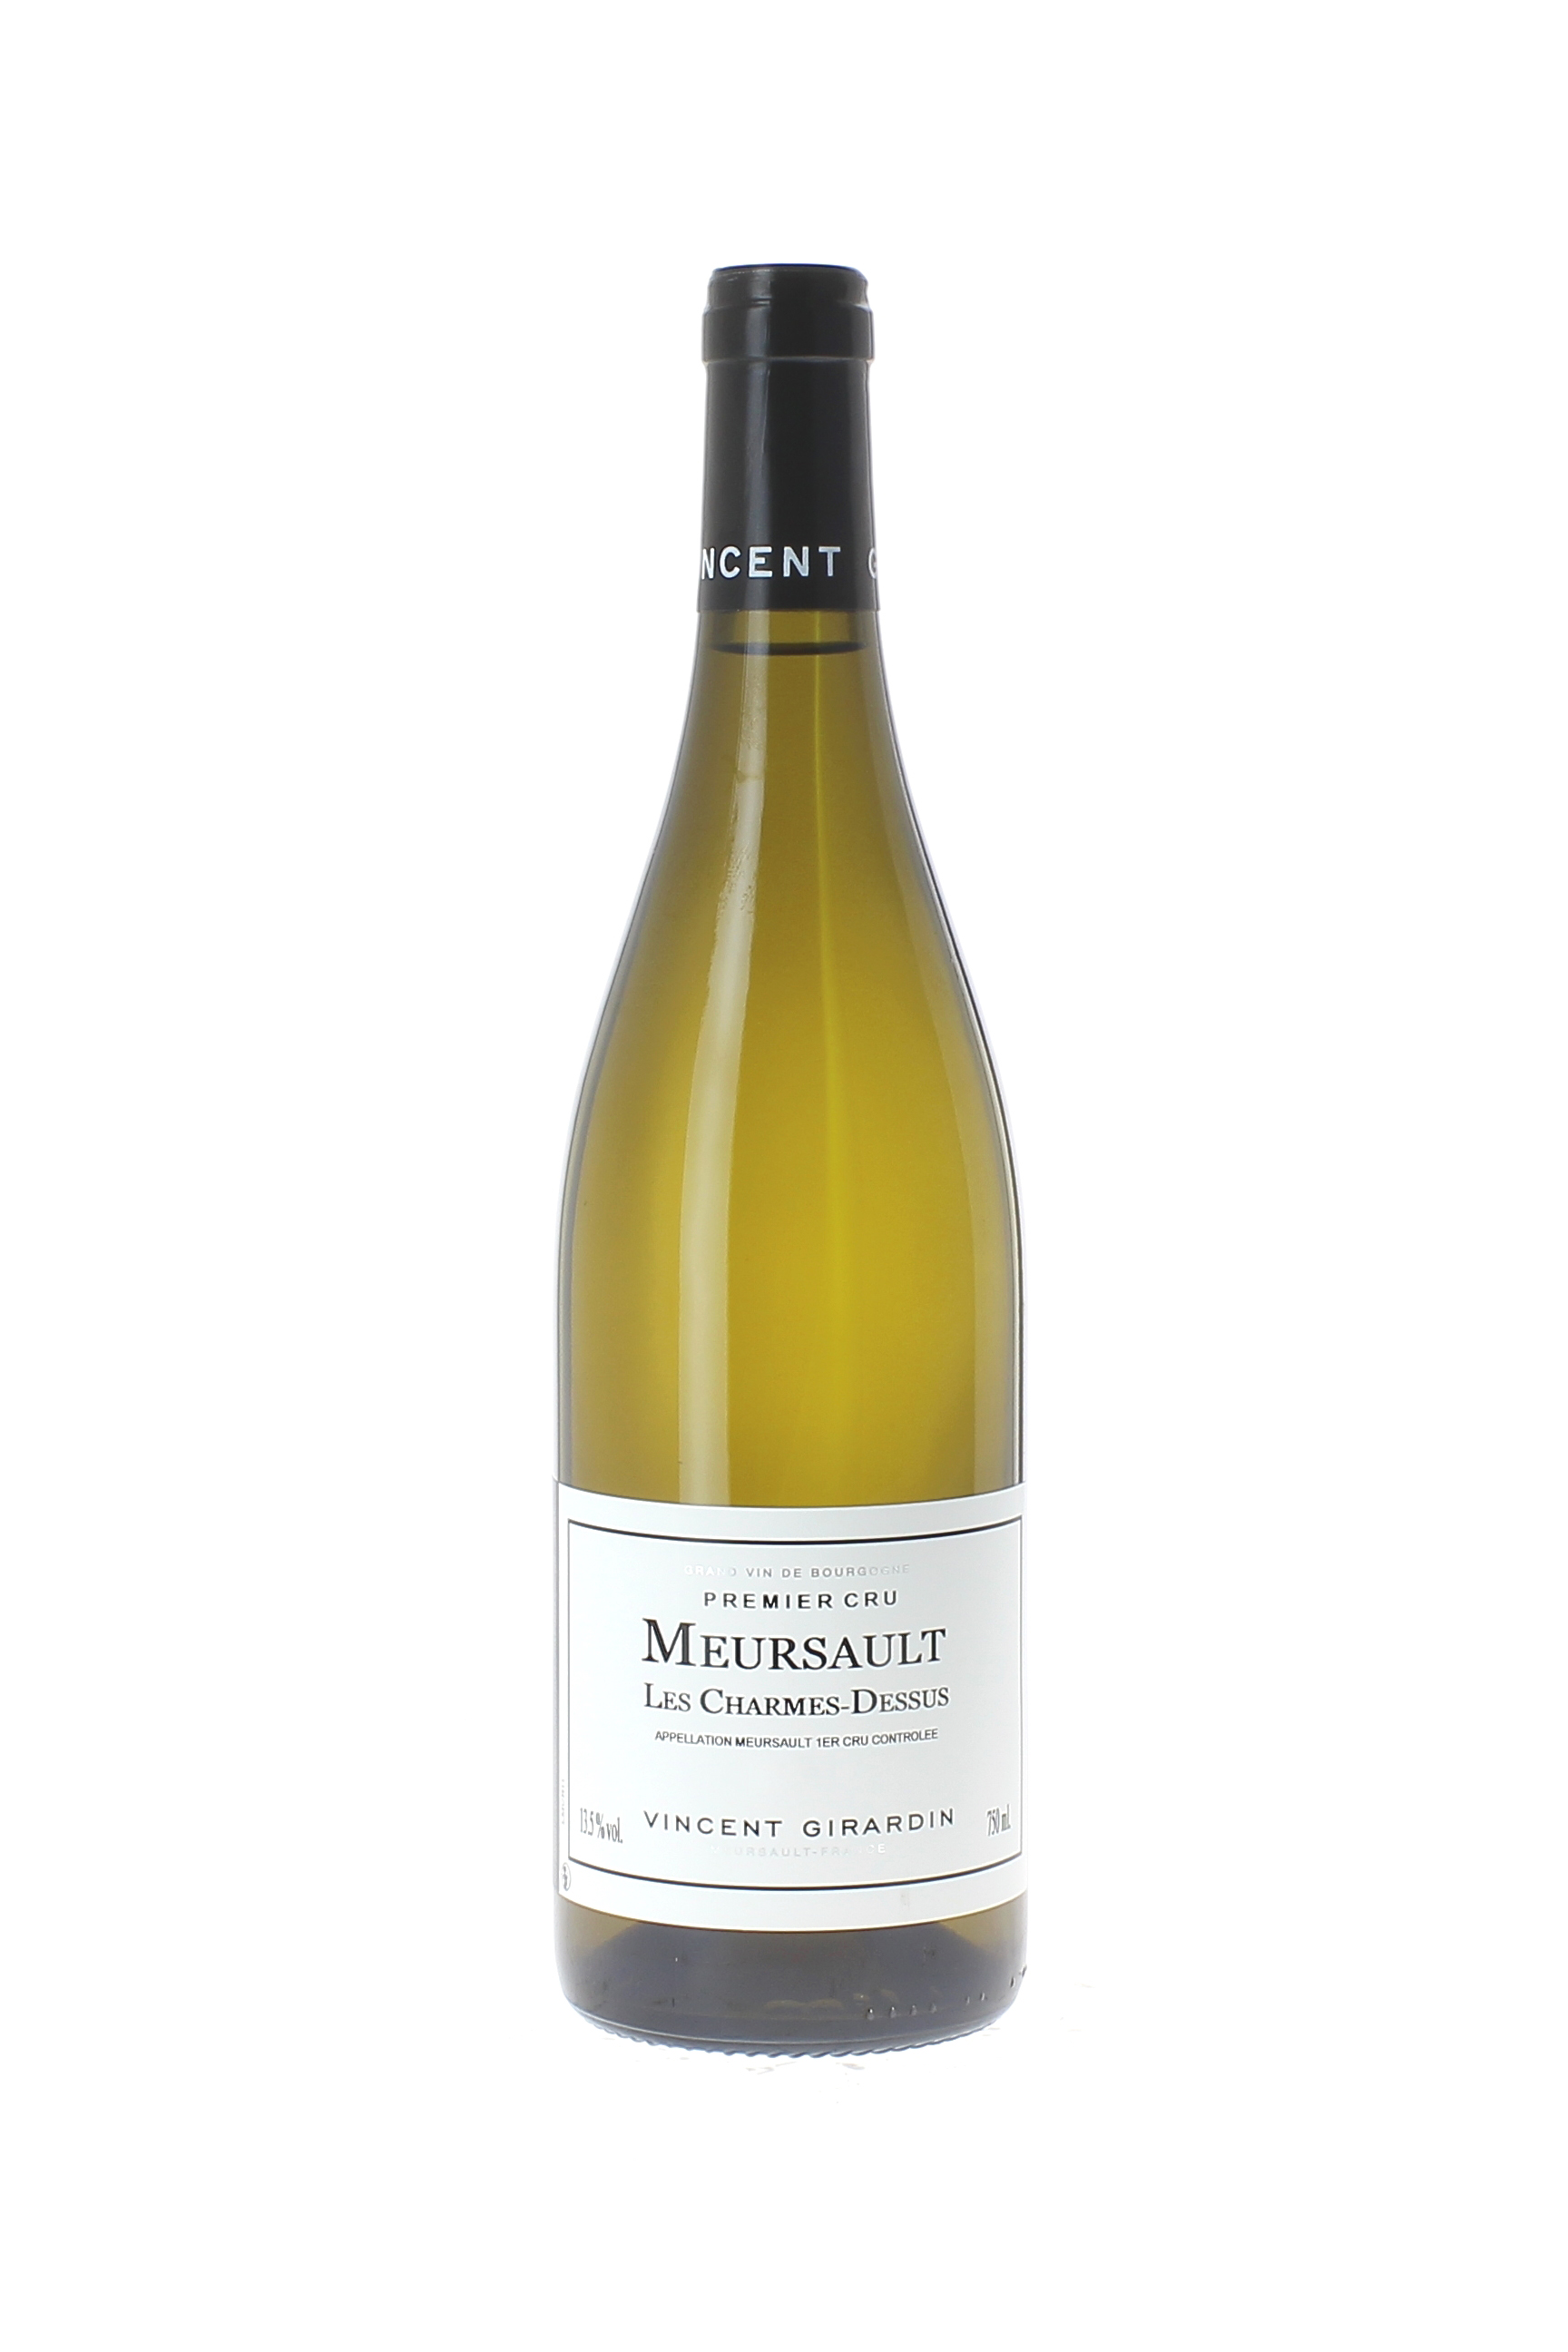 Meursault 1 er cru les charmes 2017 Domaine GIRARDIN Vincent, Bourgogne blanc